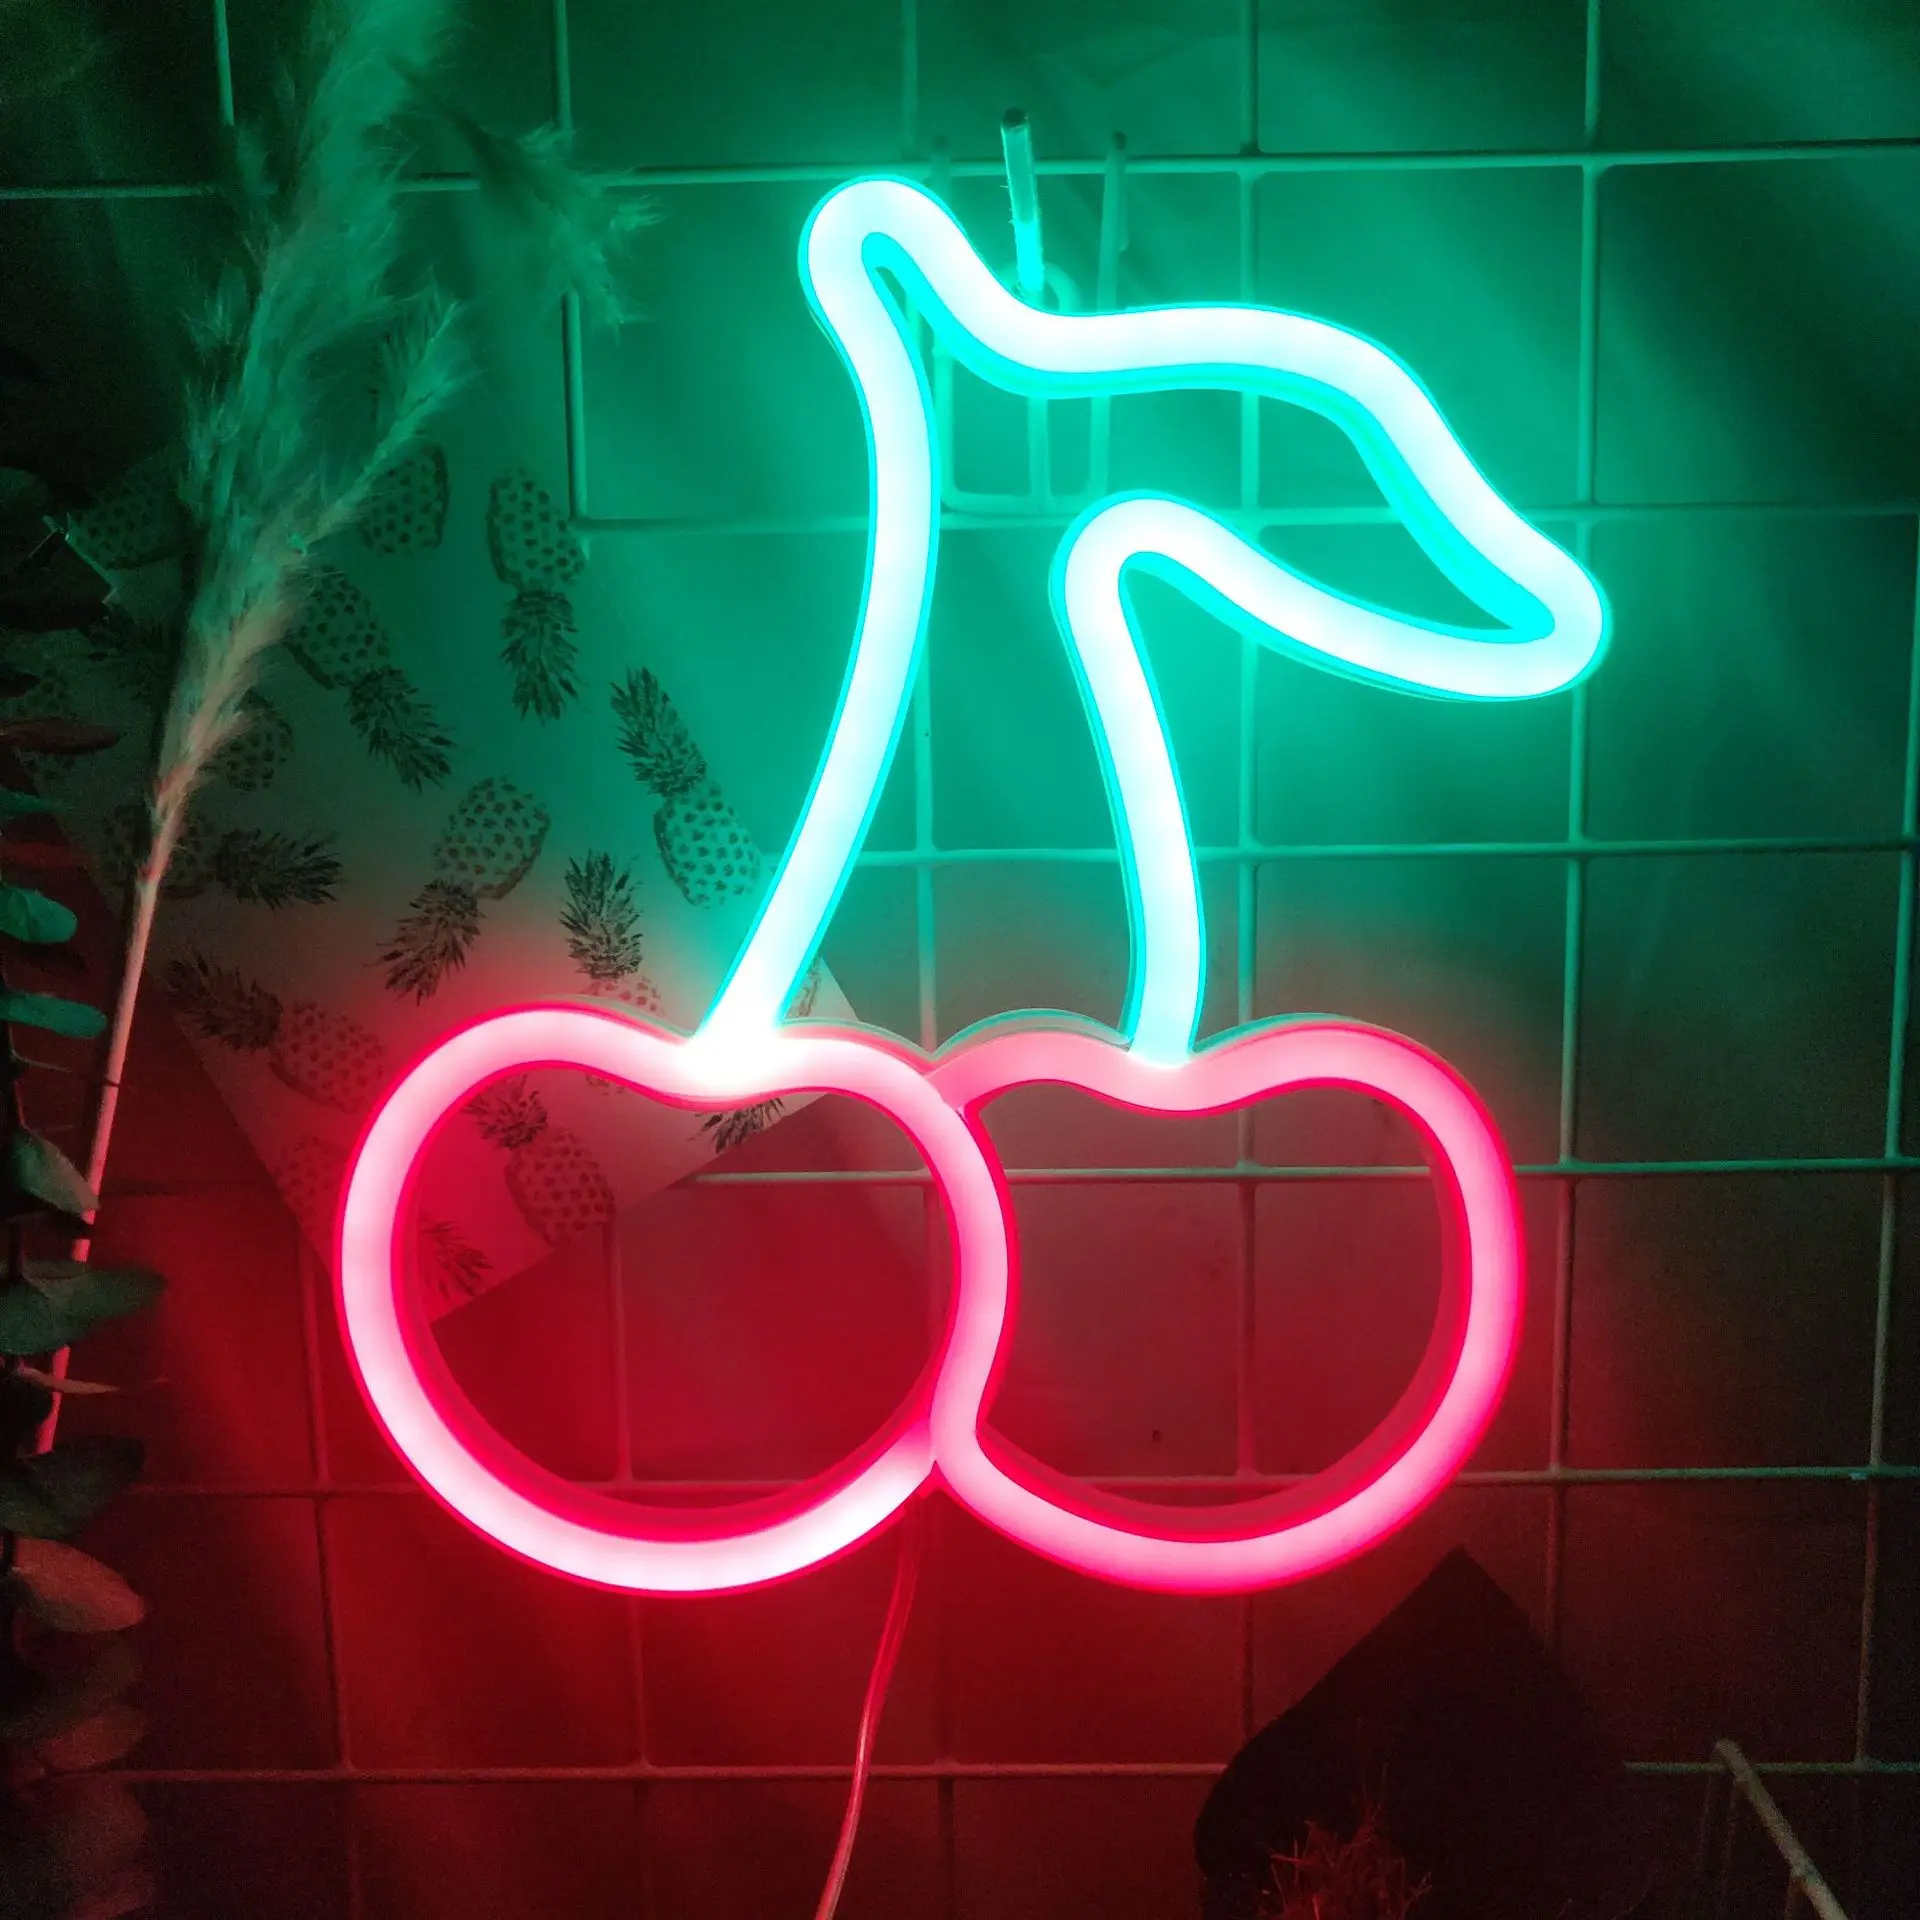 Fruit Restaurante Parede Sinal De Neon para